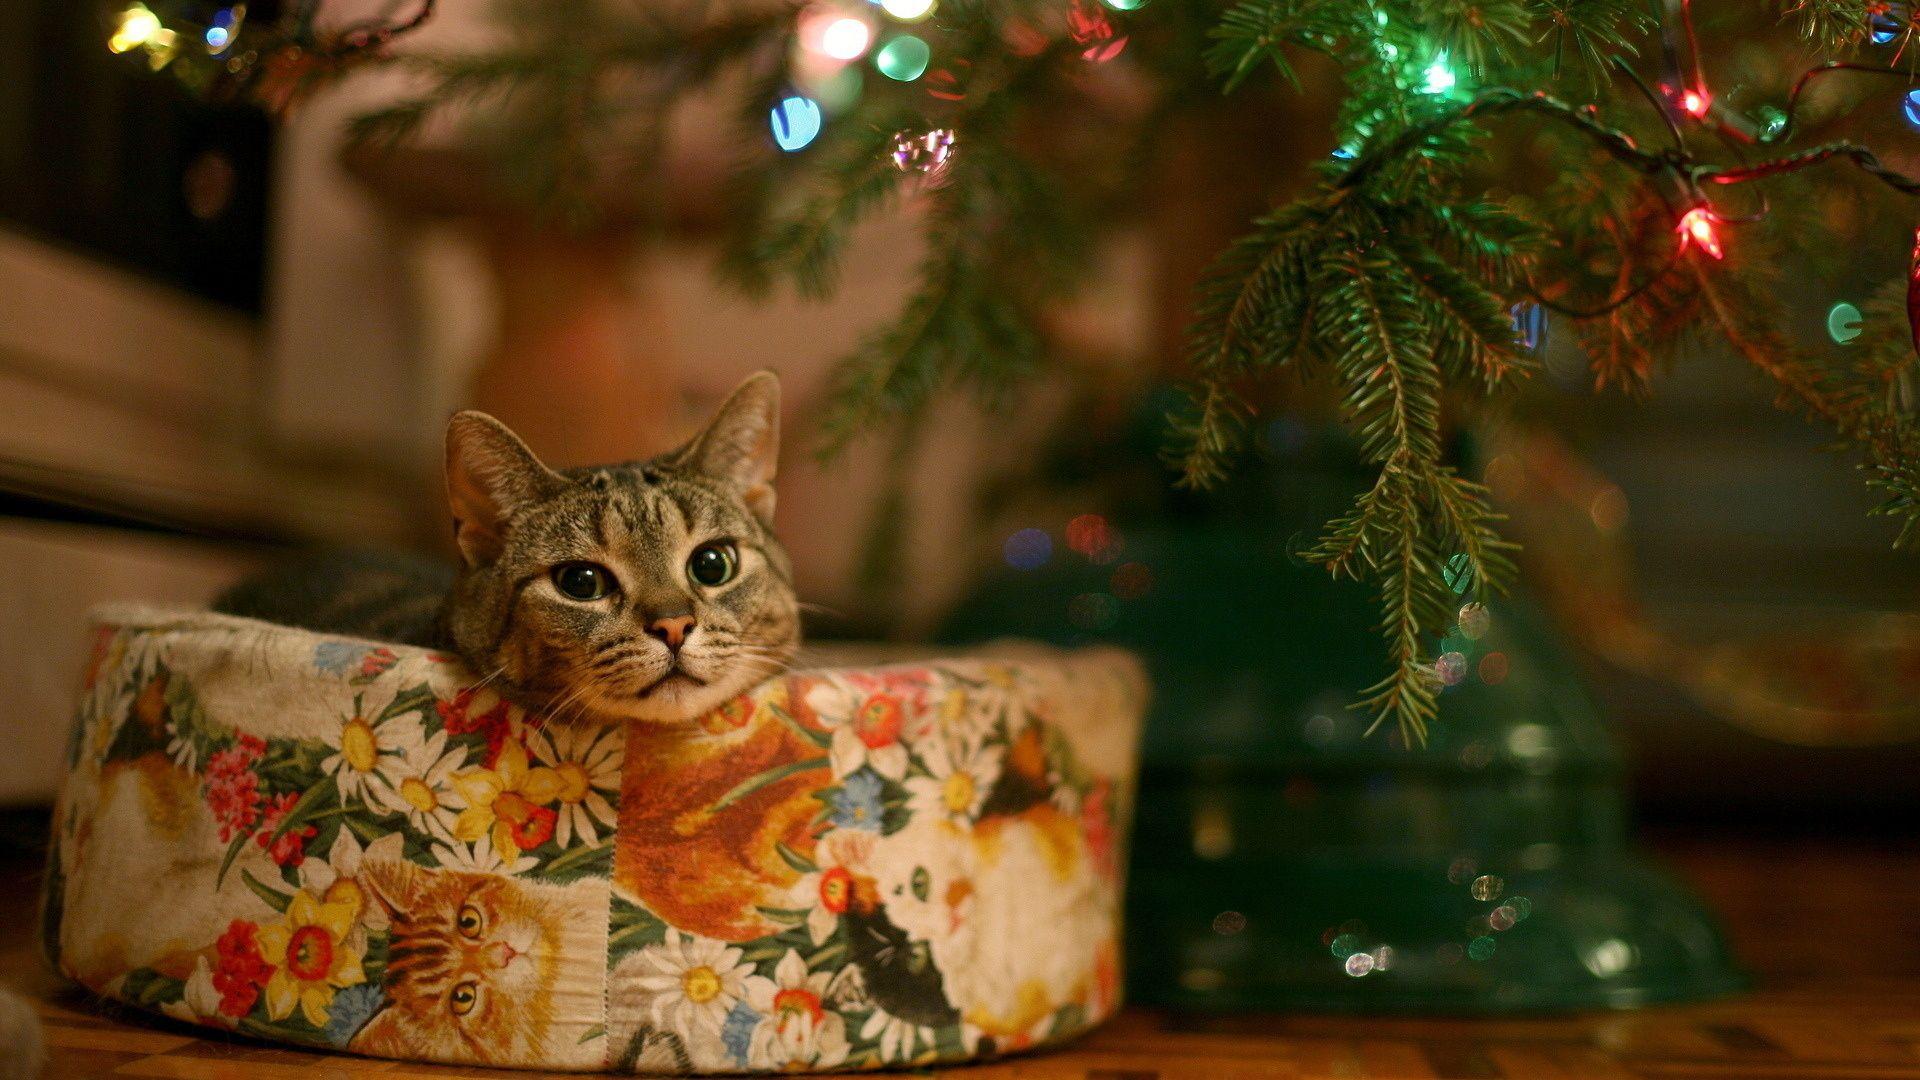 Cute Christmas Cat Full Hd 1080p Wallpaper 1920x1080. Cats, Christmas Cats, Cute Cats